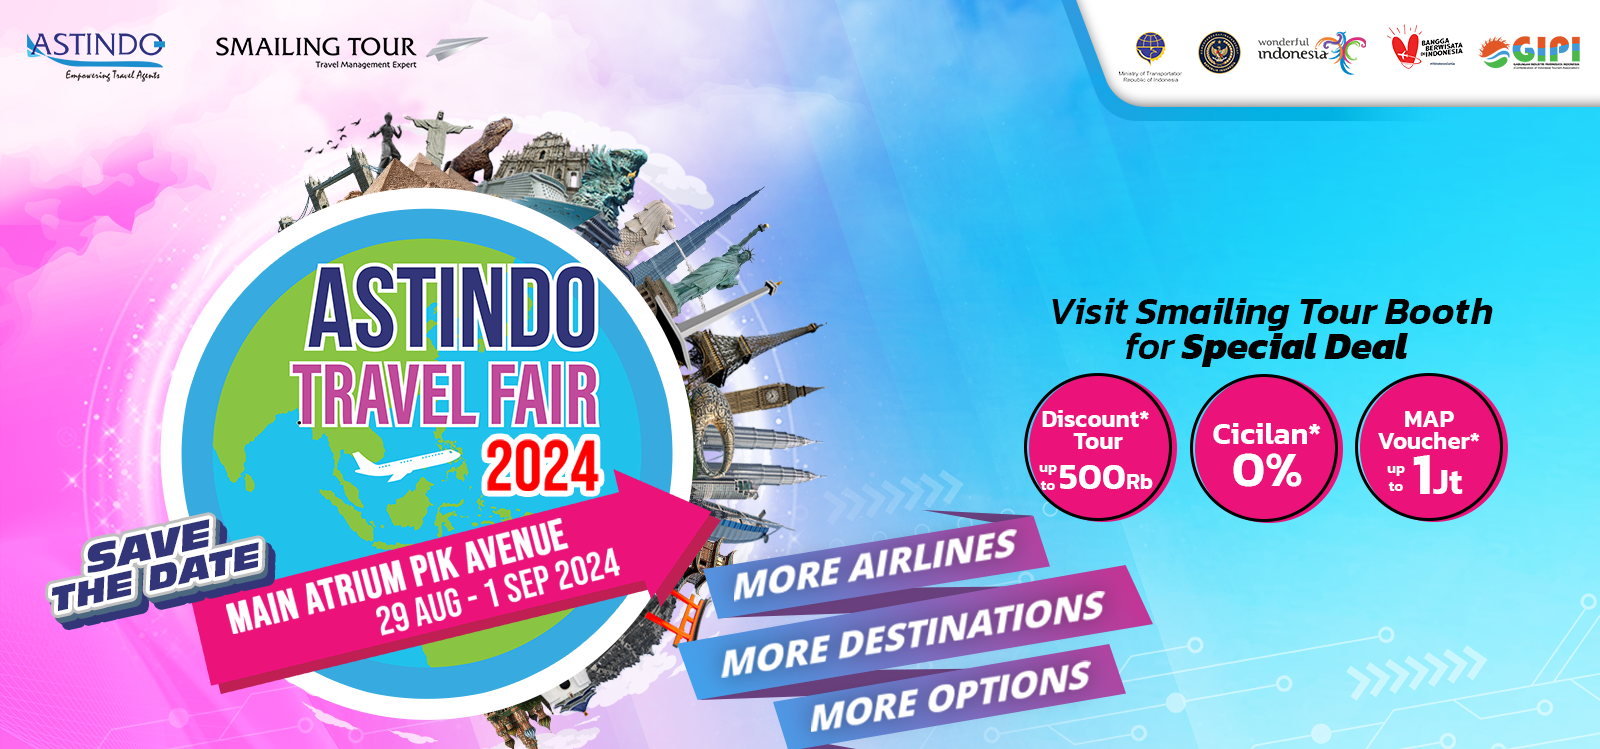 Astindo Travel Fair Aug 2024